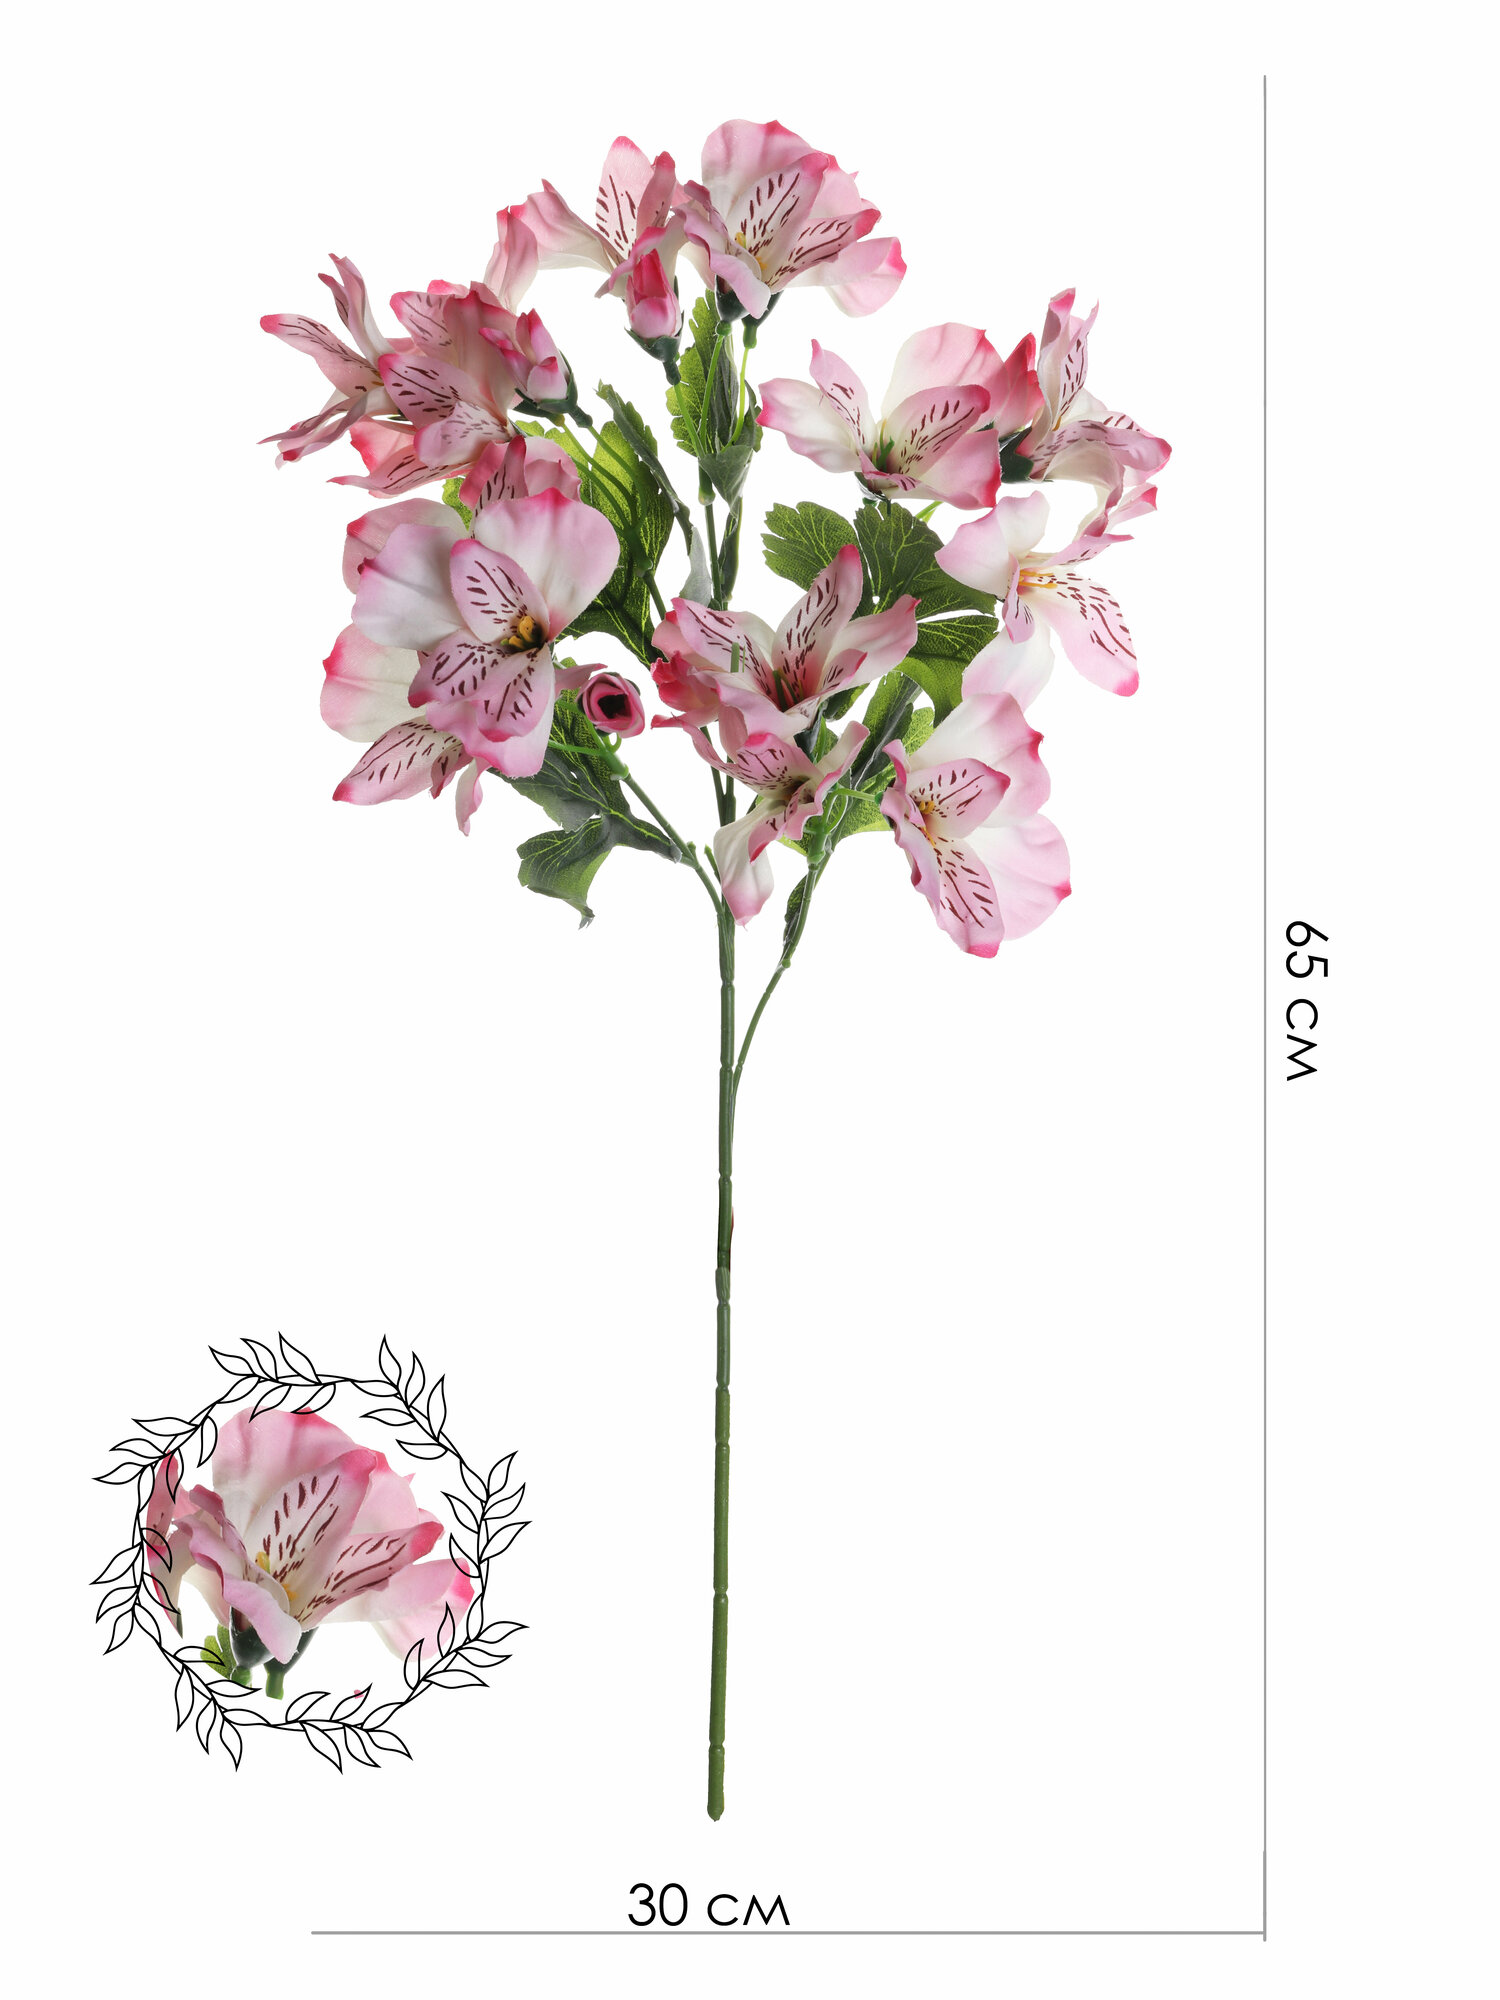 Искусственные цветы "Альстромерия" от бренда "Holodilova"